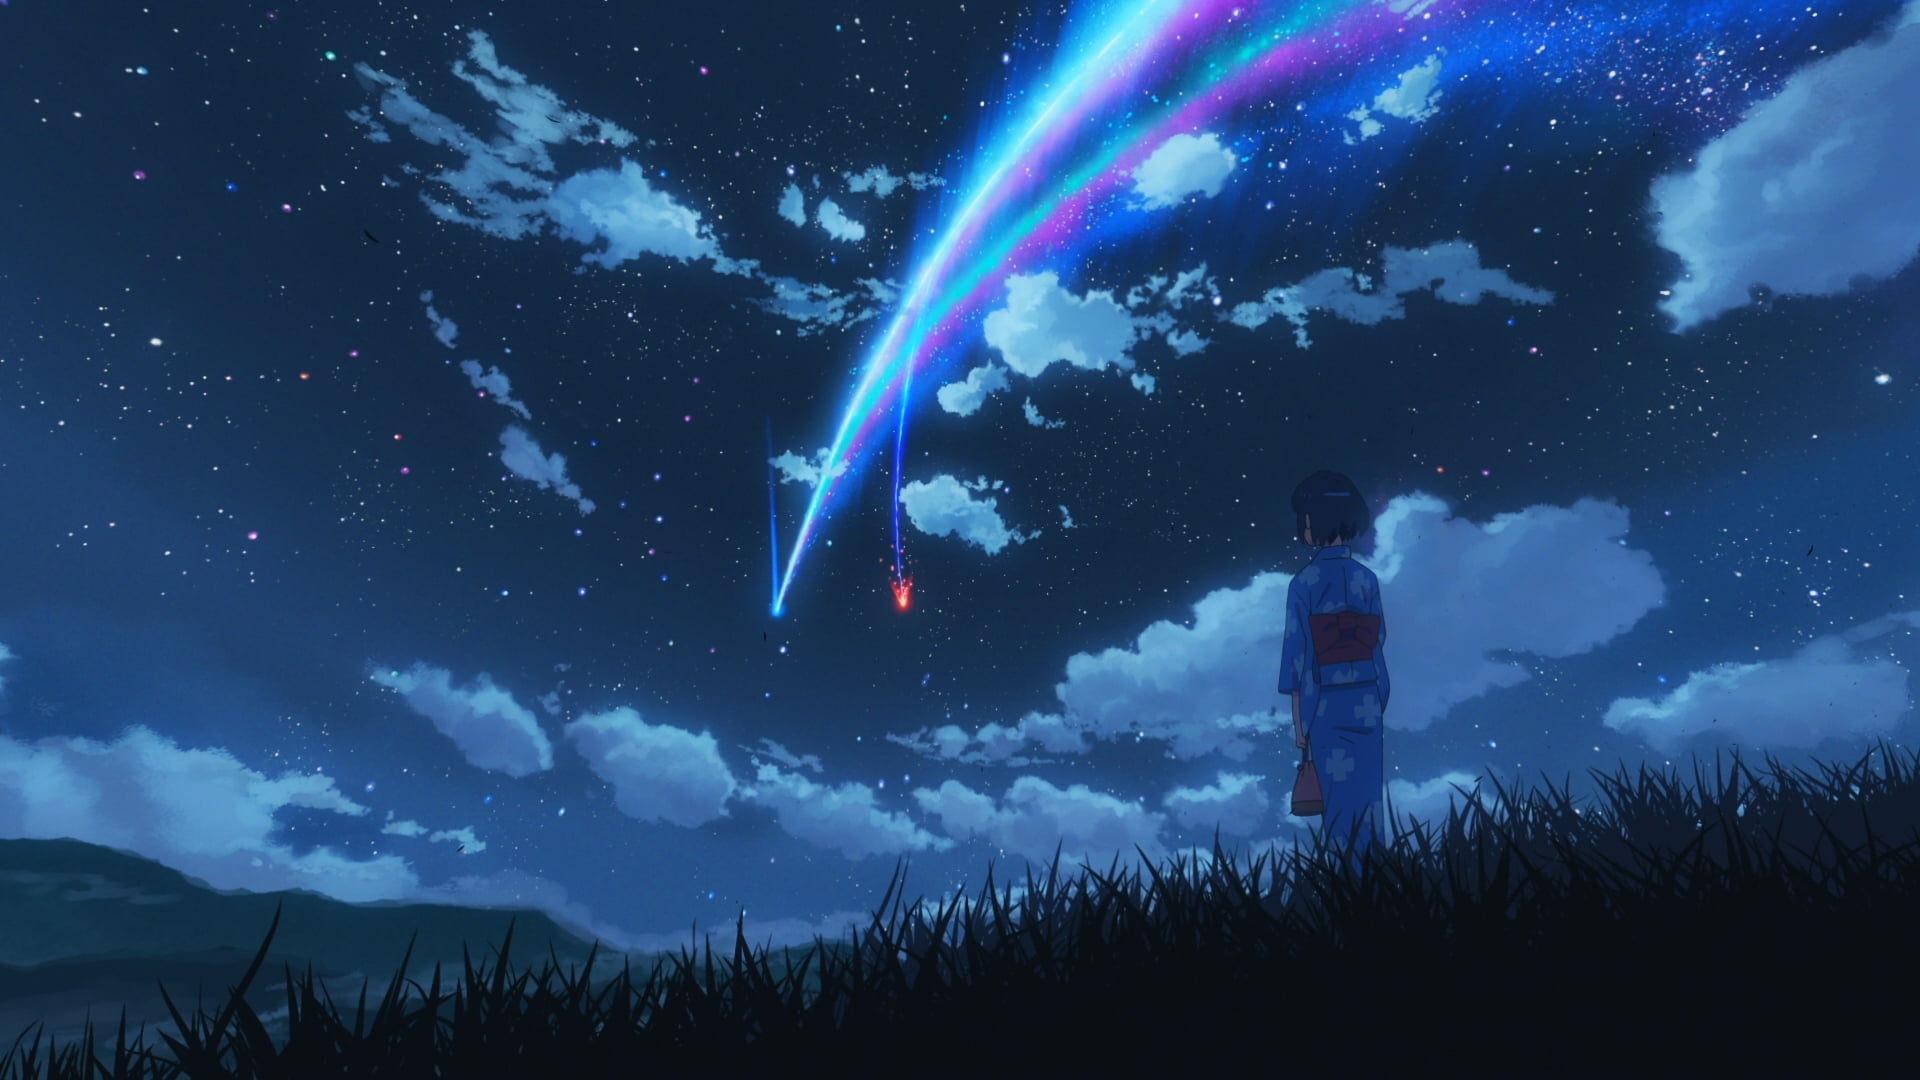 Your Name anime movie scene, Kimi no Na Wa, Makoto Shinkai, starry night